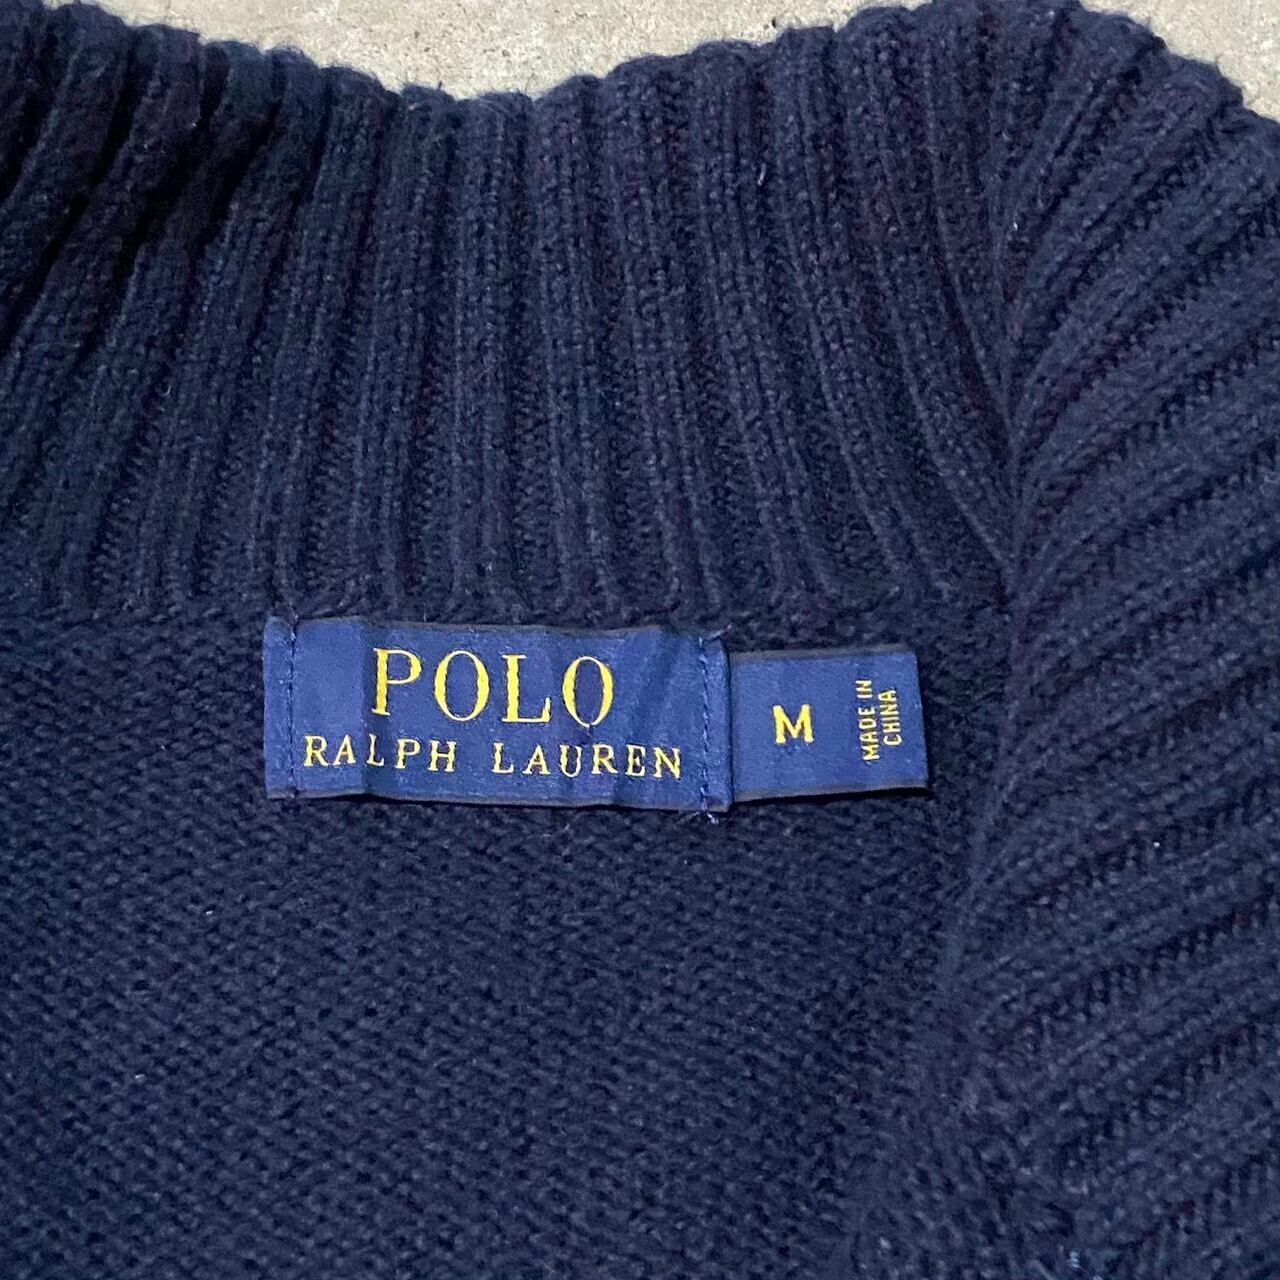 Polo Ralph Lauren ポロラルフローレン ハーフジップ コットンニット 